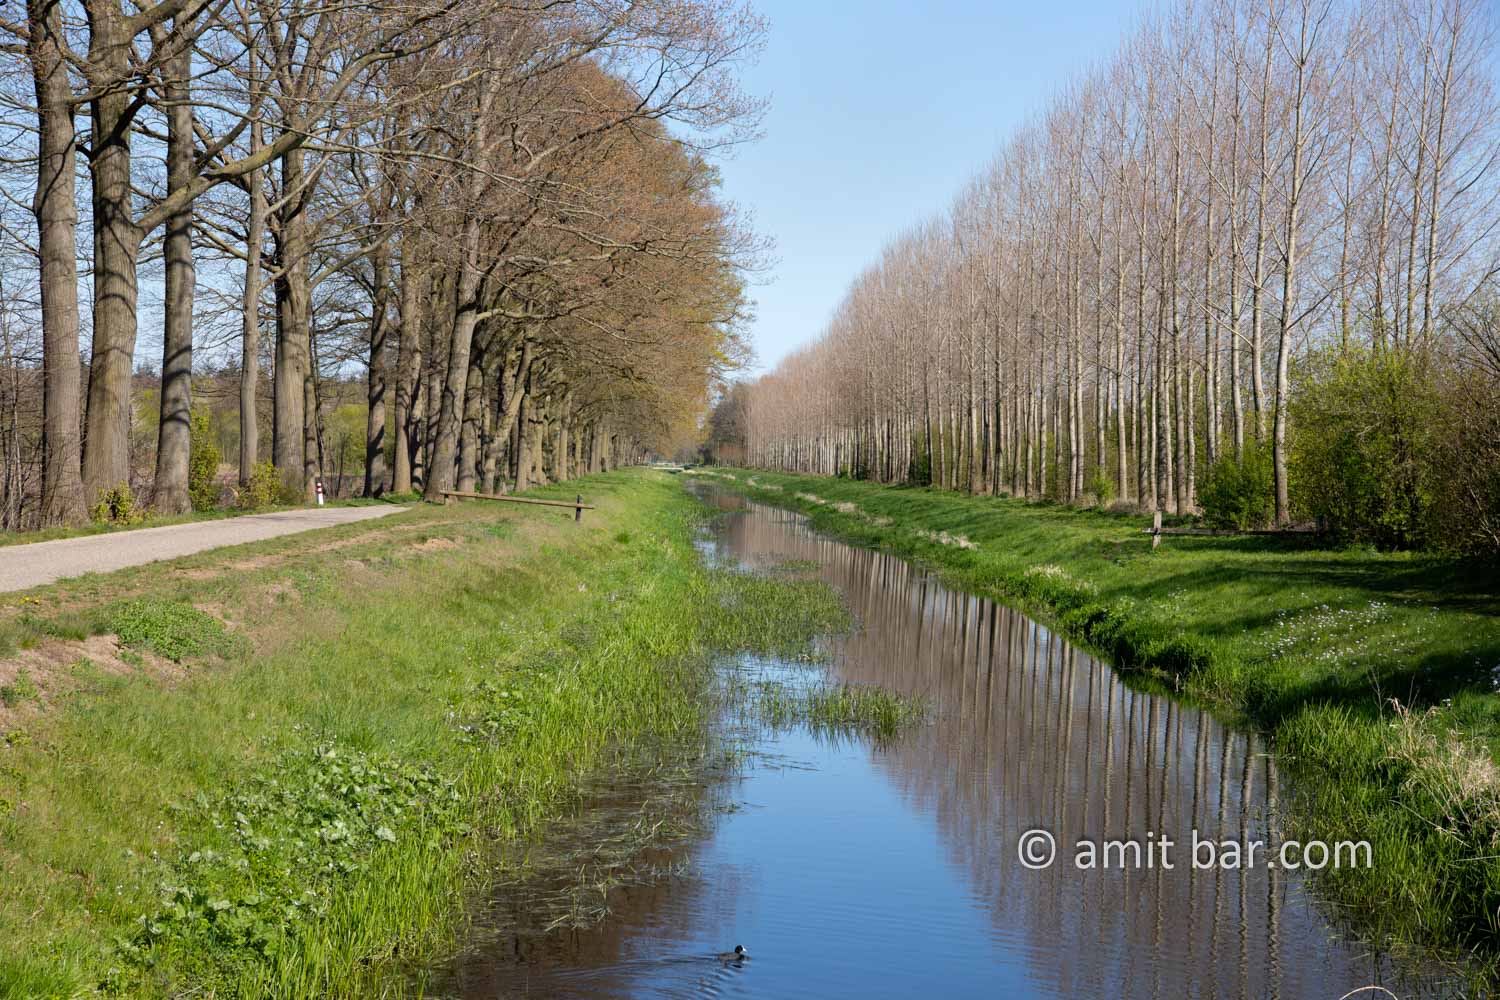 Landscape Spring 2021 II: Spring time in the Achterhoek, The Netherlands